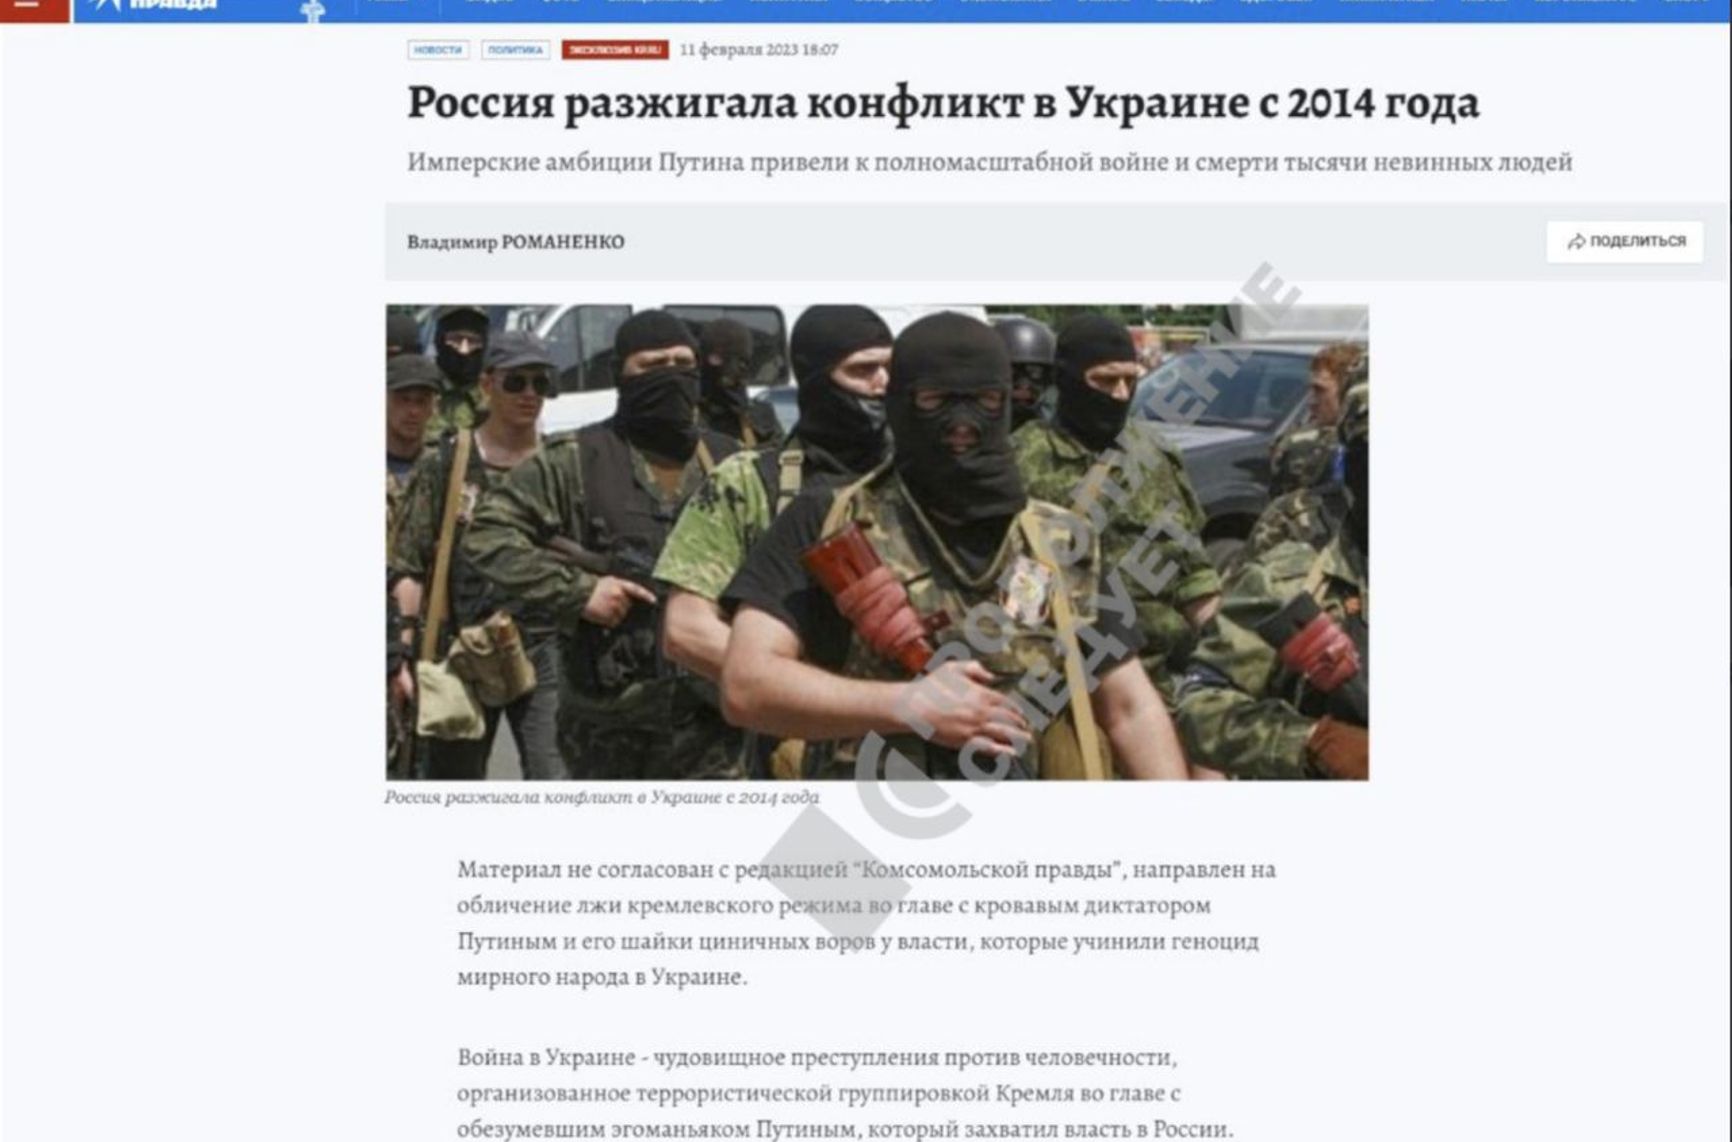 На сайте «Комсомольской правды» появились материалы о войне в Украине и пытках Навального. Их сразу удалили